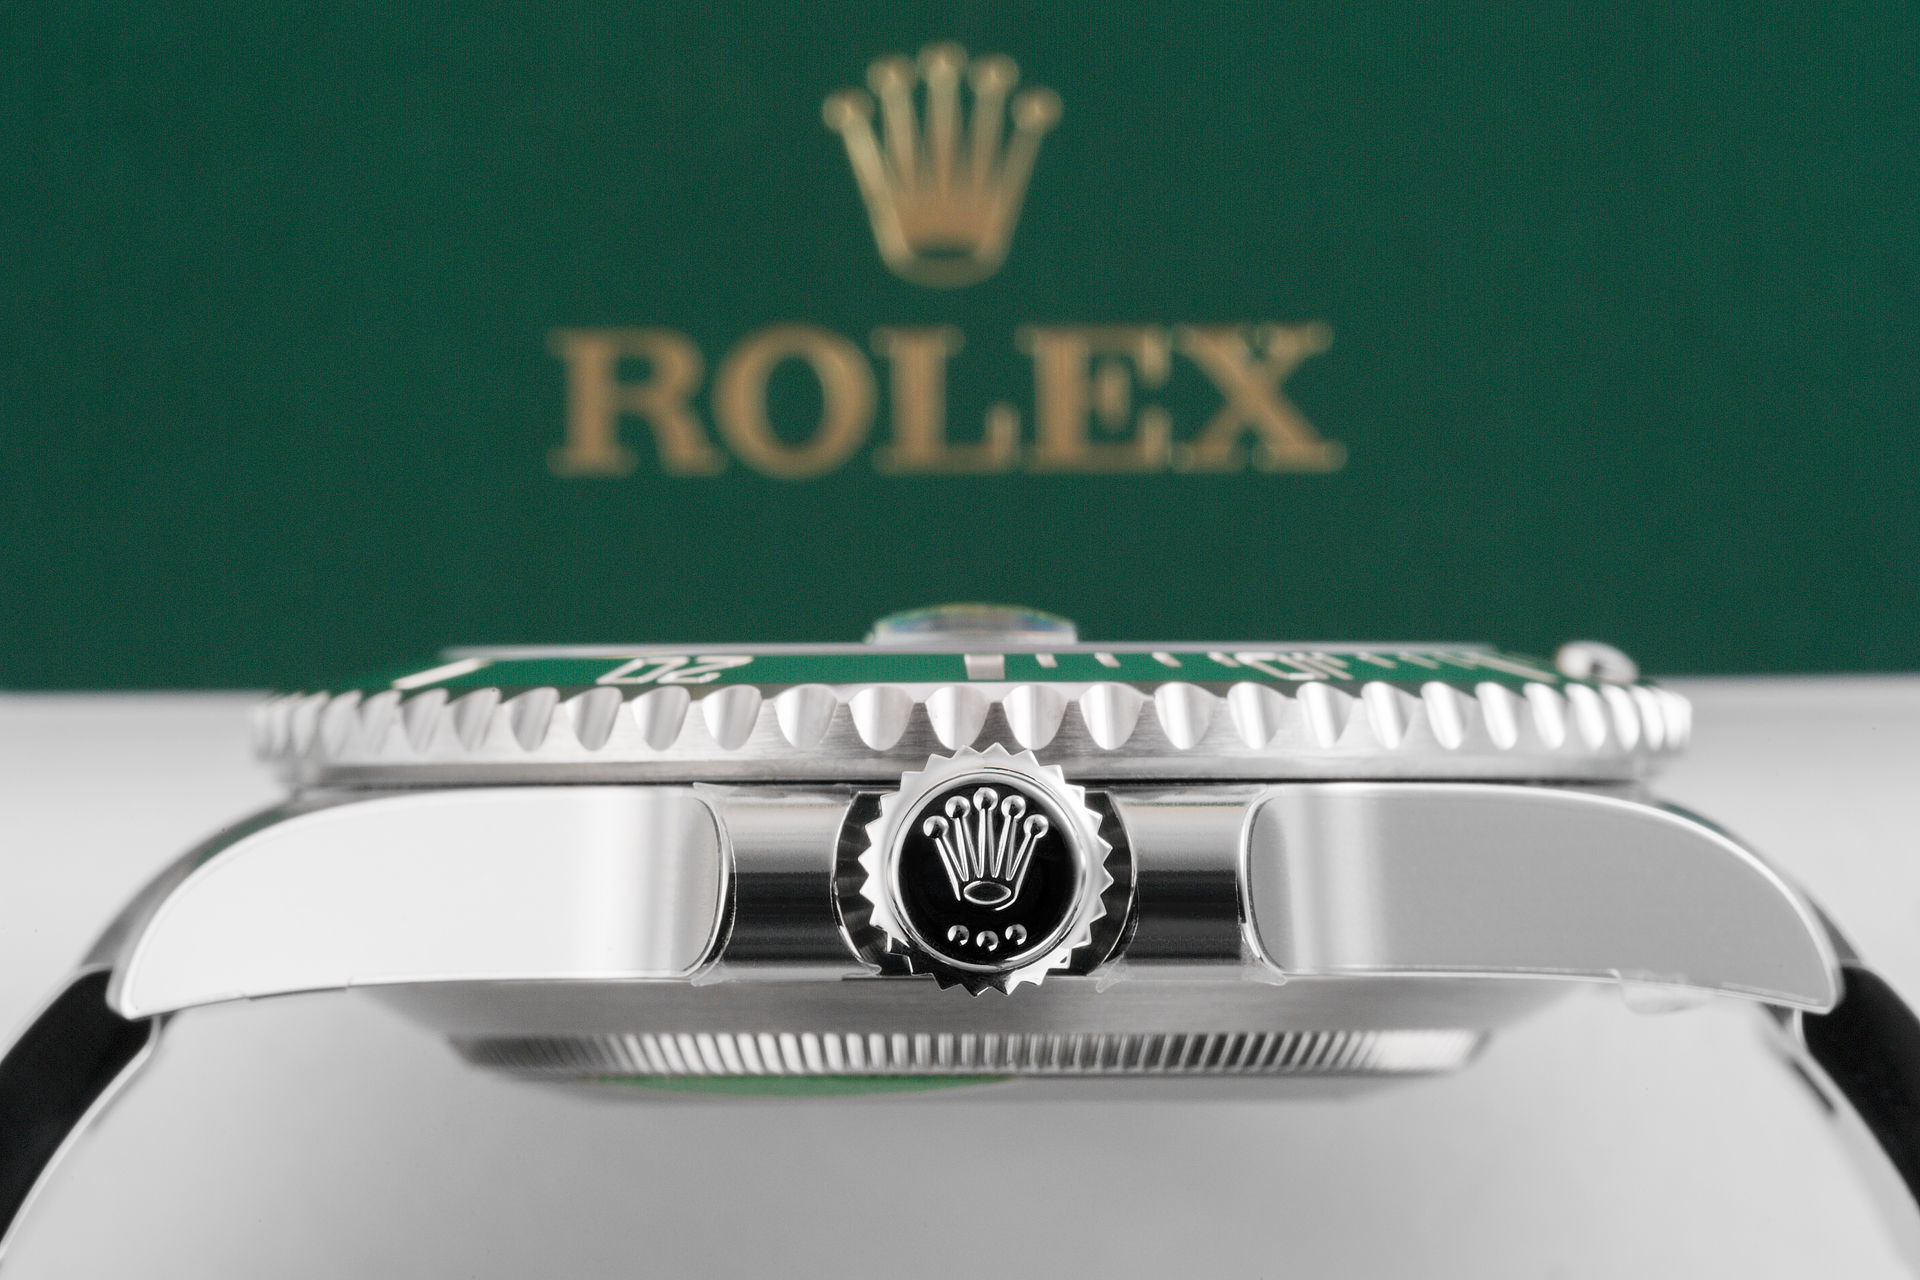 ref 116610LV | 5 Year Rolex Warranty | Rolex Submariner Date